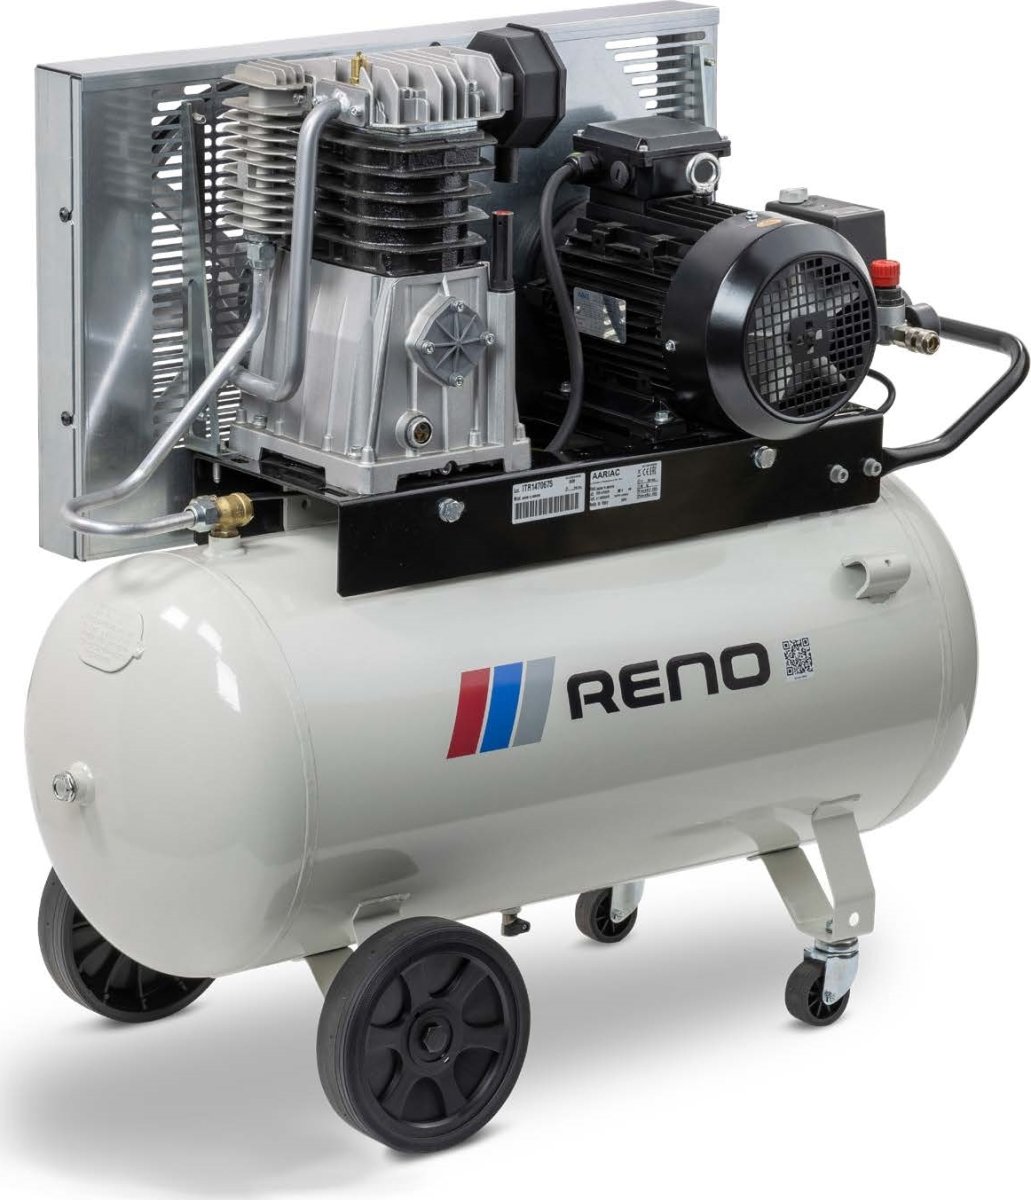 Reno kompressor, 90 l beholder